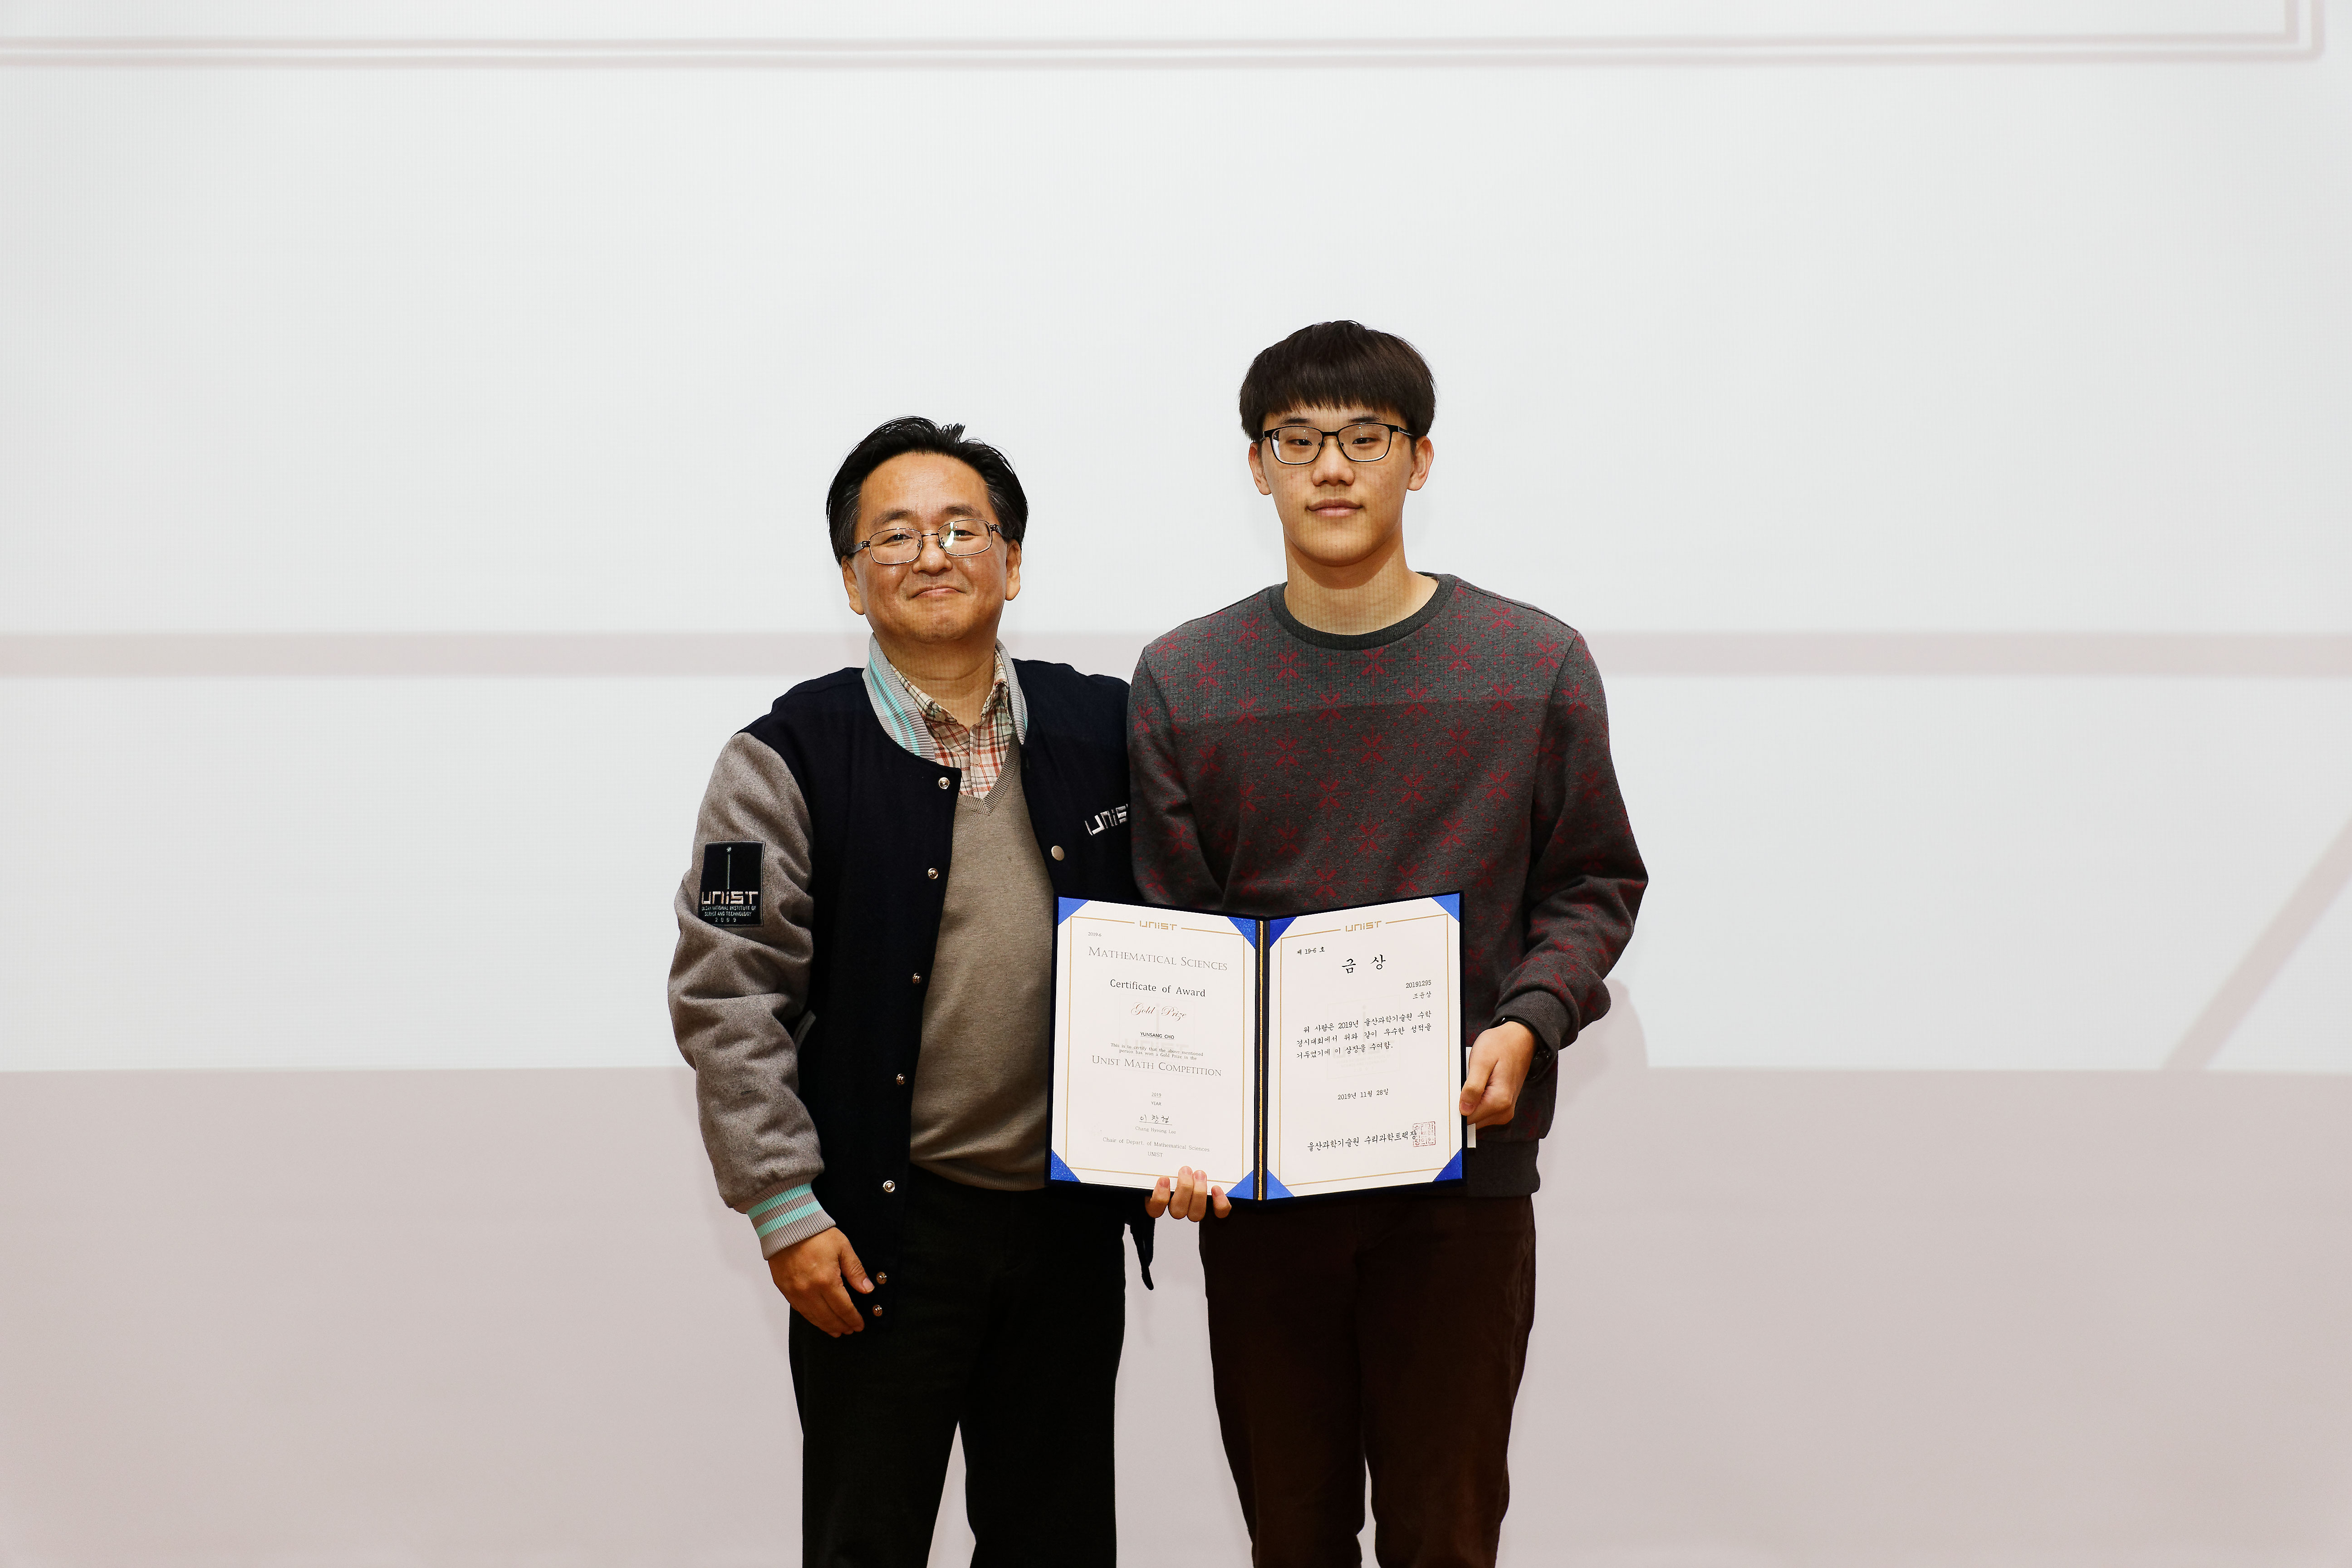 조윤상 학생(왼쪽)이 금상을 수상했다. | 사진: 김경채